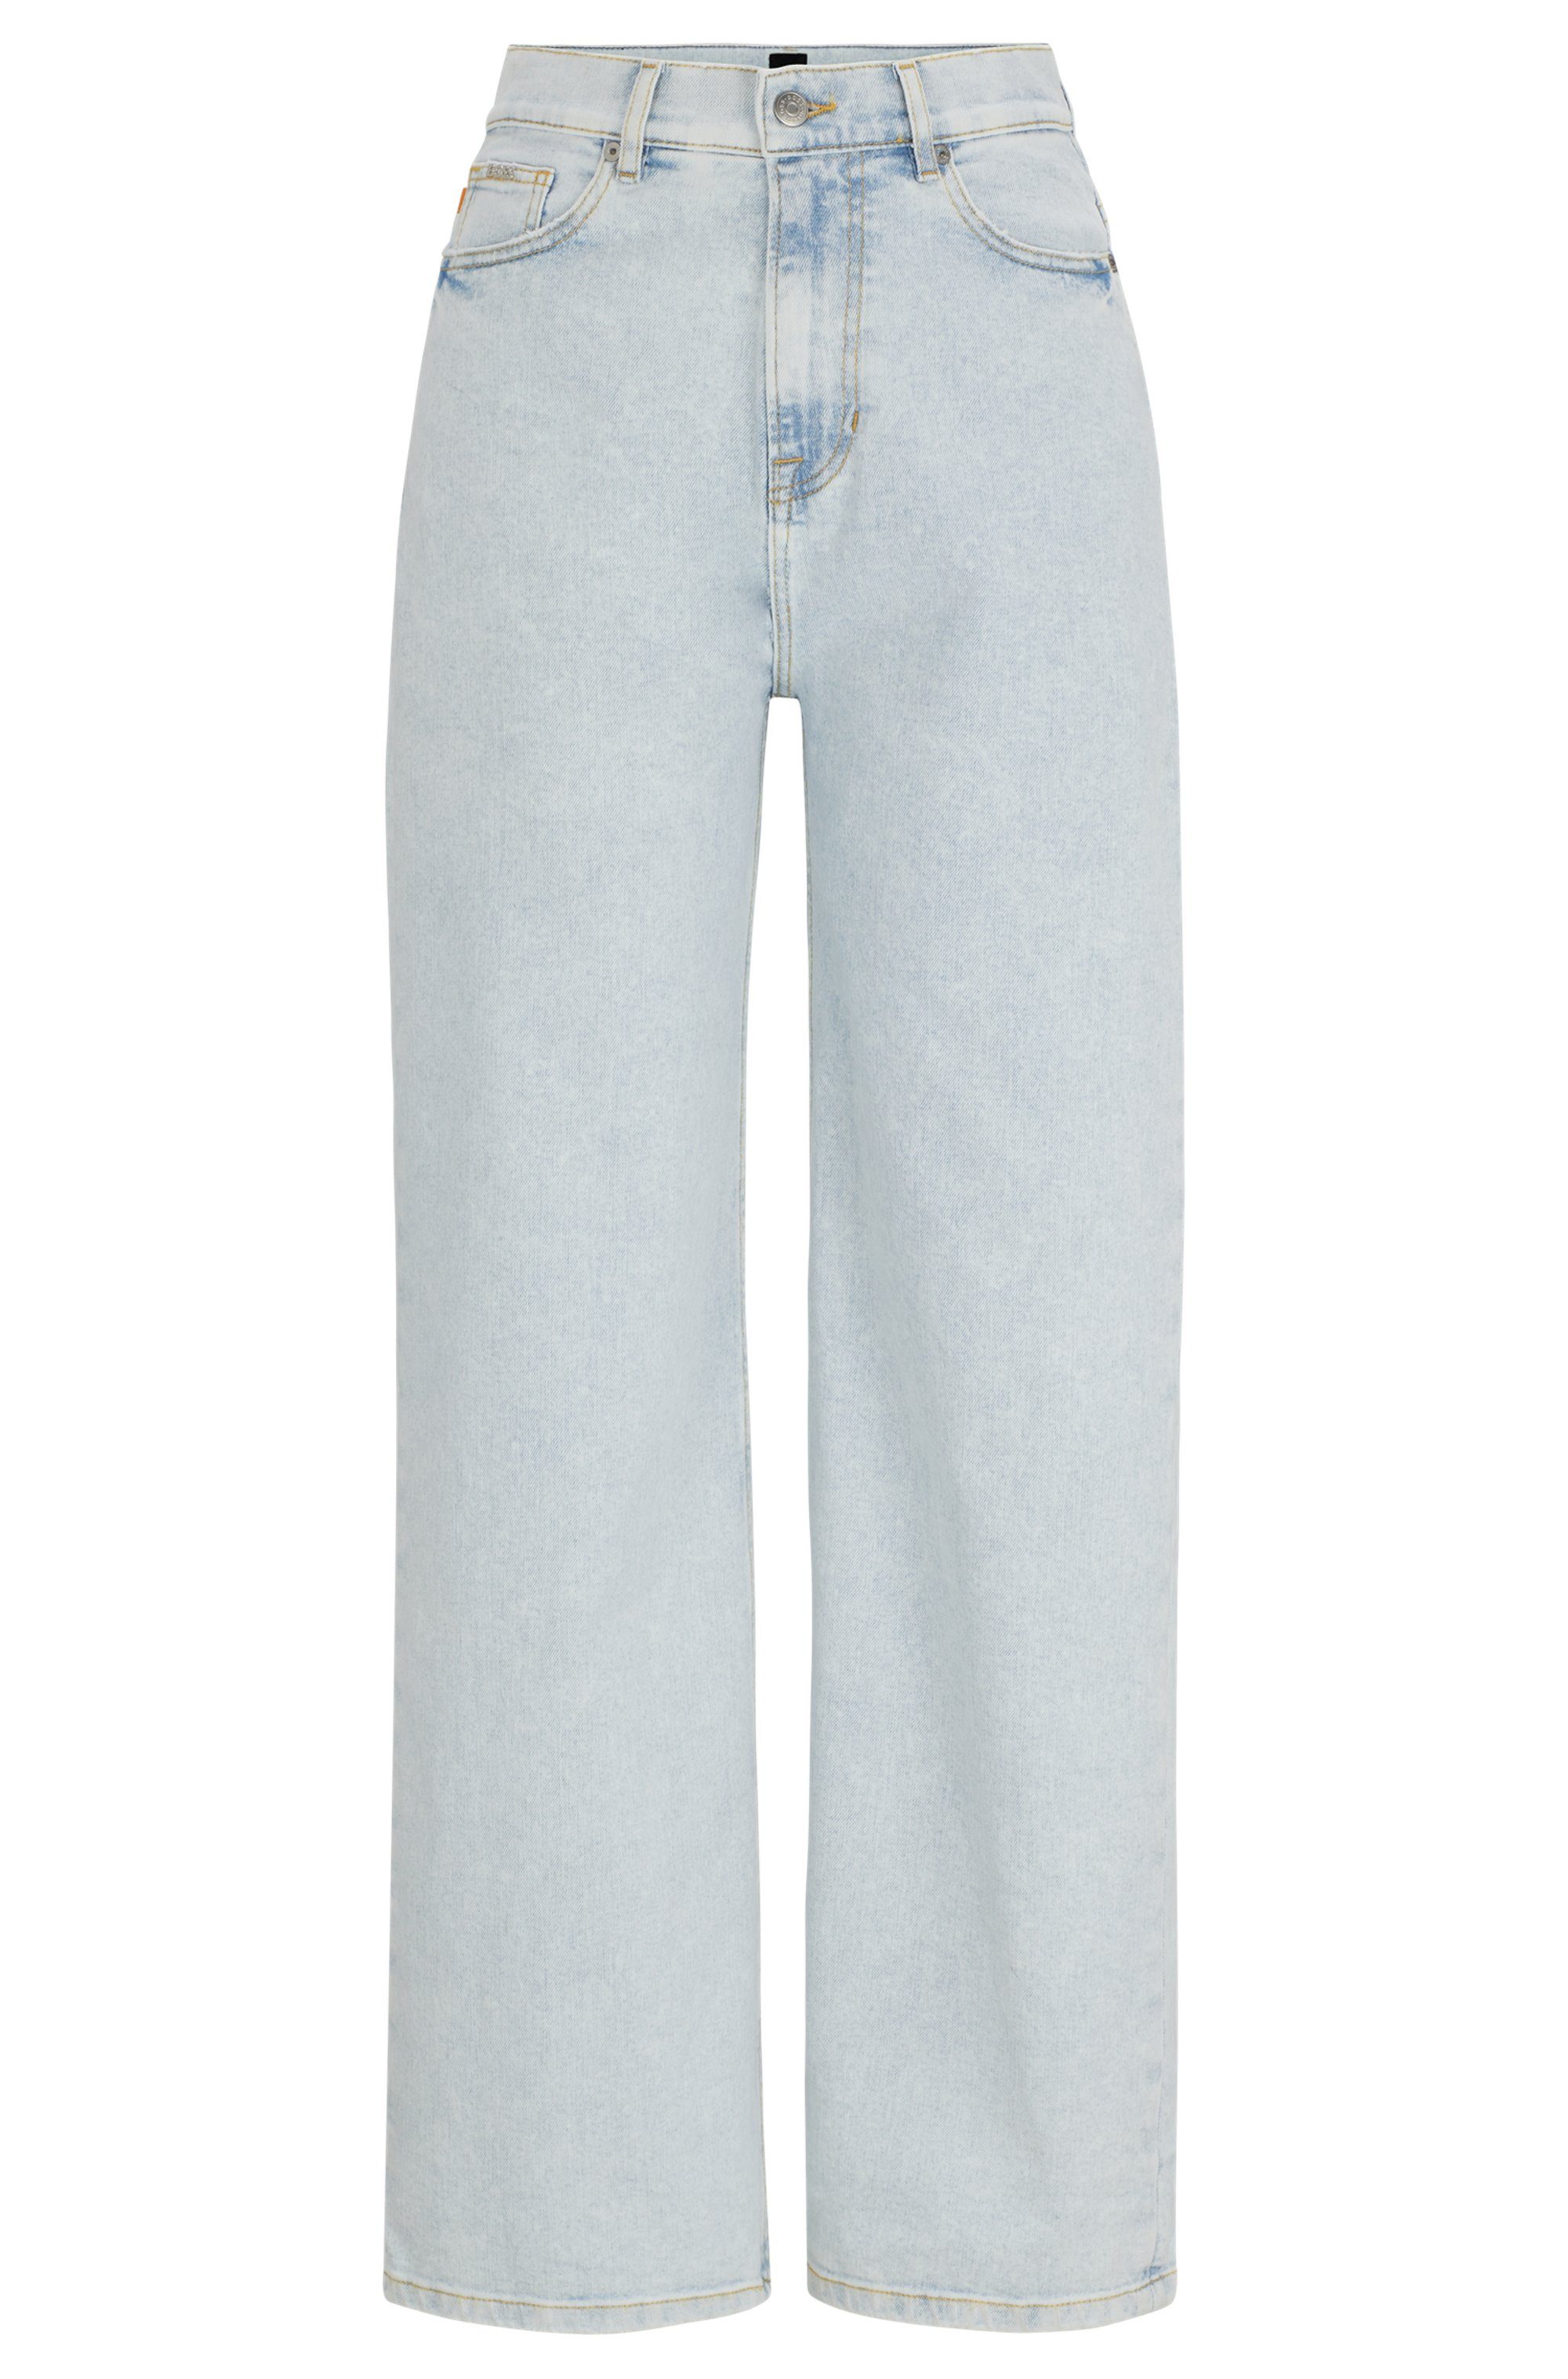 BOSS ORANGE Weite Jeans Marlene High Rise Hochbund High Waist Premium Denim Jeans in Five-Pocket-Form